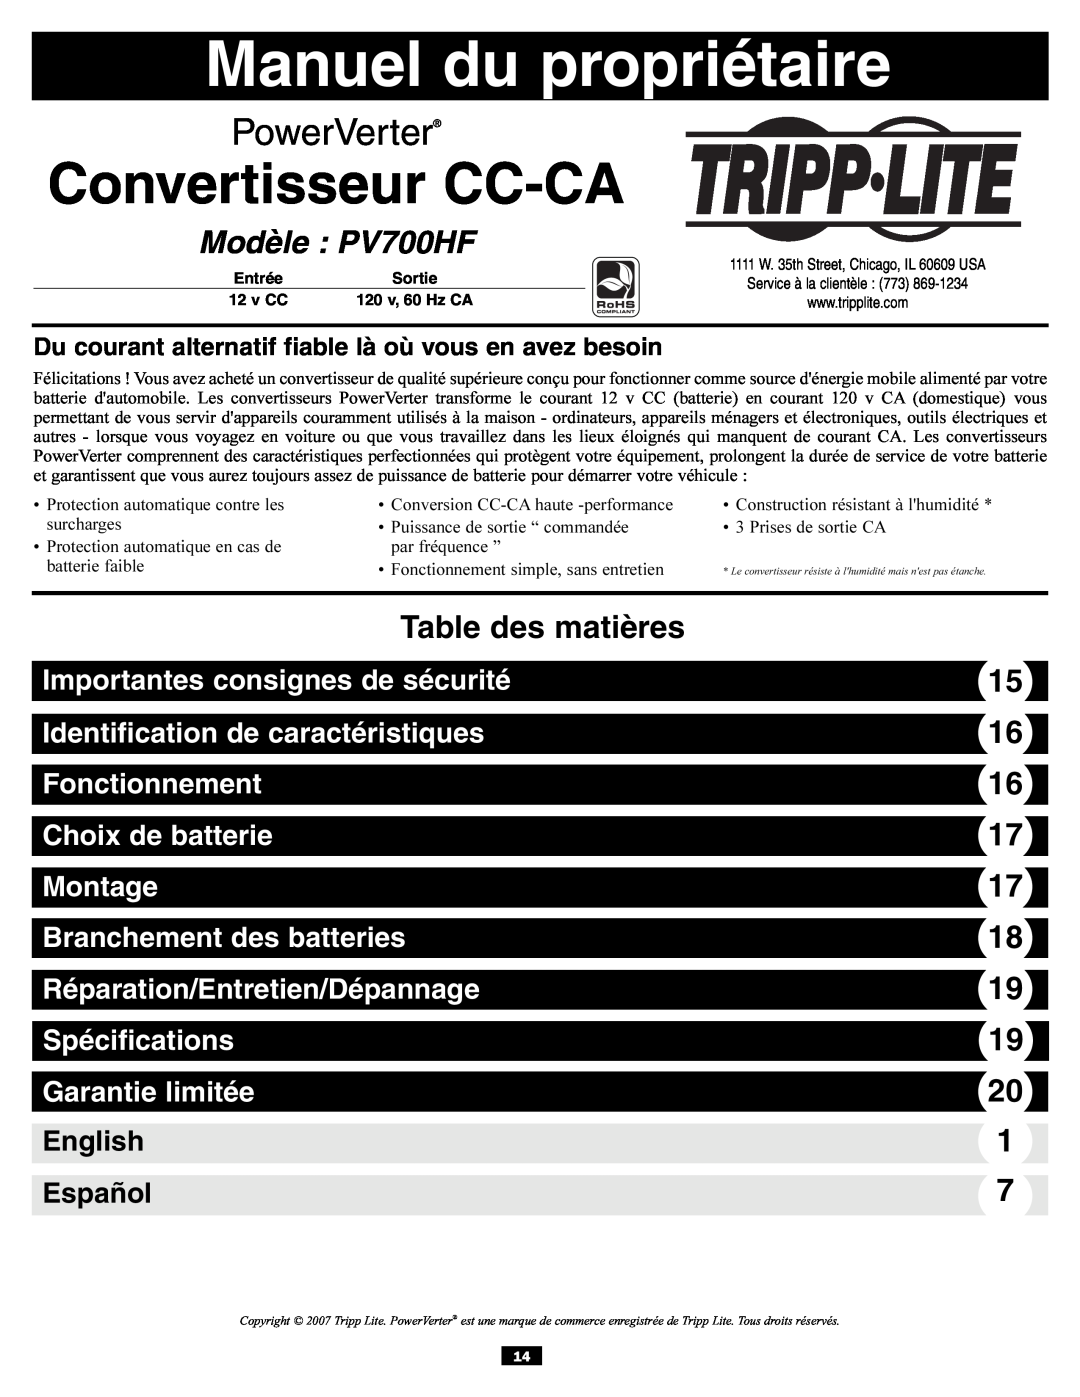 Tripp Lite Manuel du propriétaire, Convertisseur CC-CA, Modèle PV700HF, Table des matières, Fonctionnement, Montage 